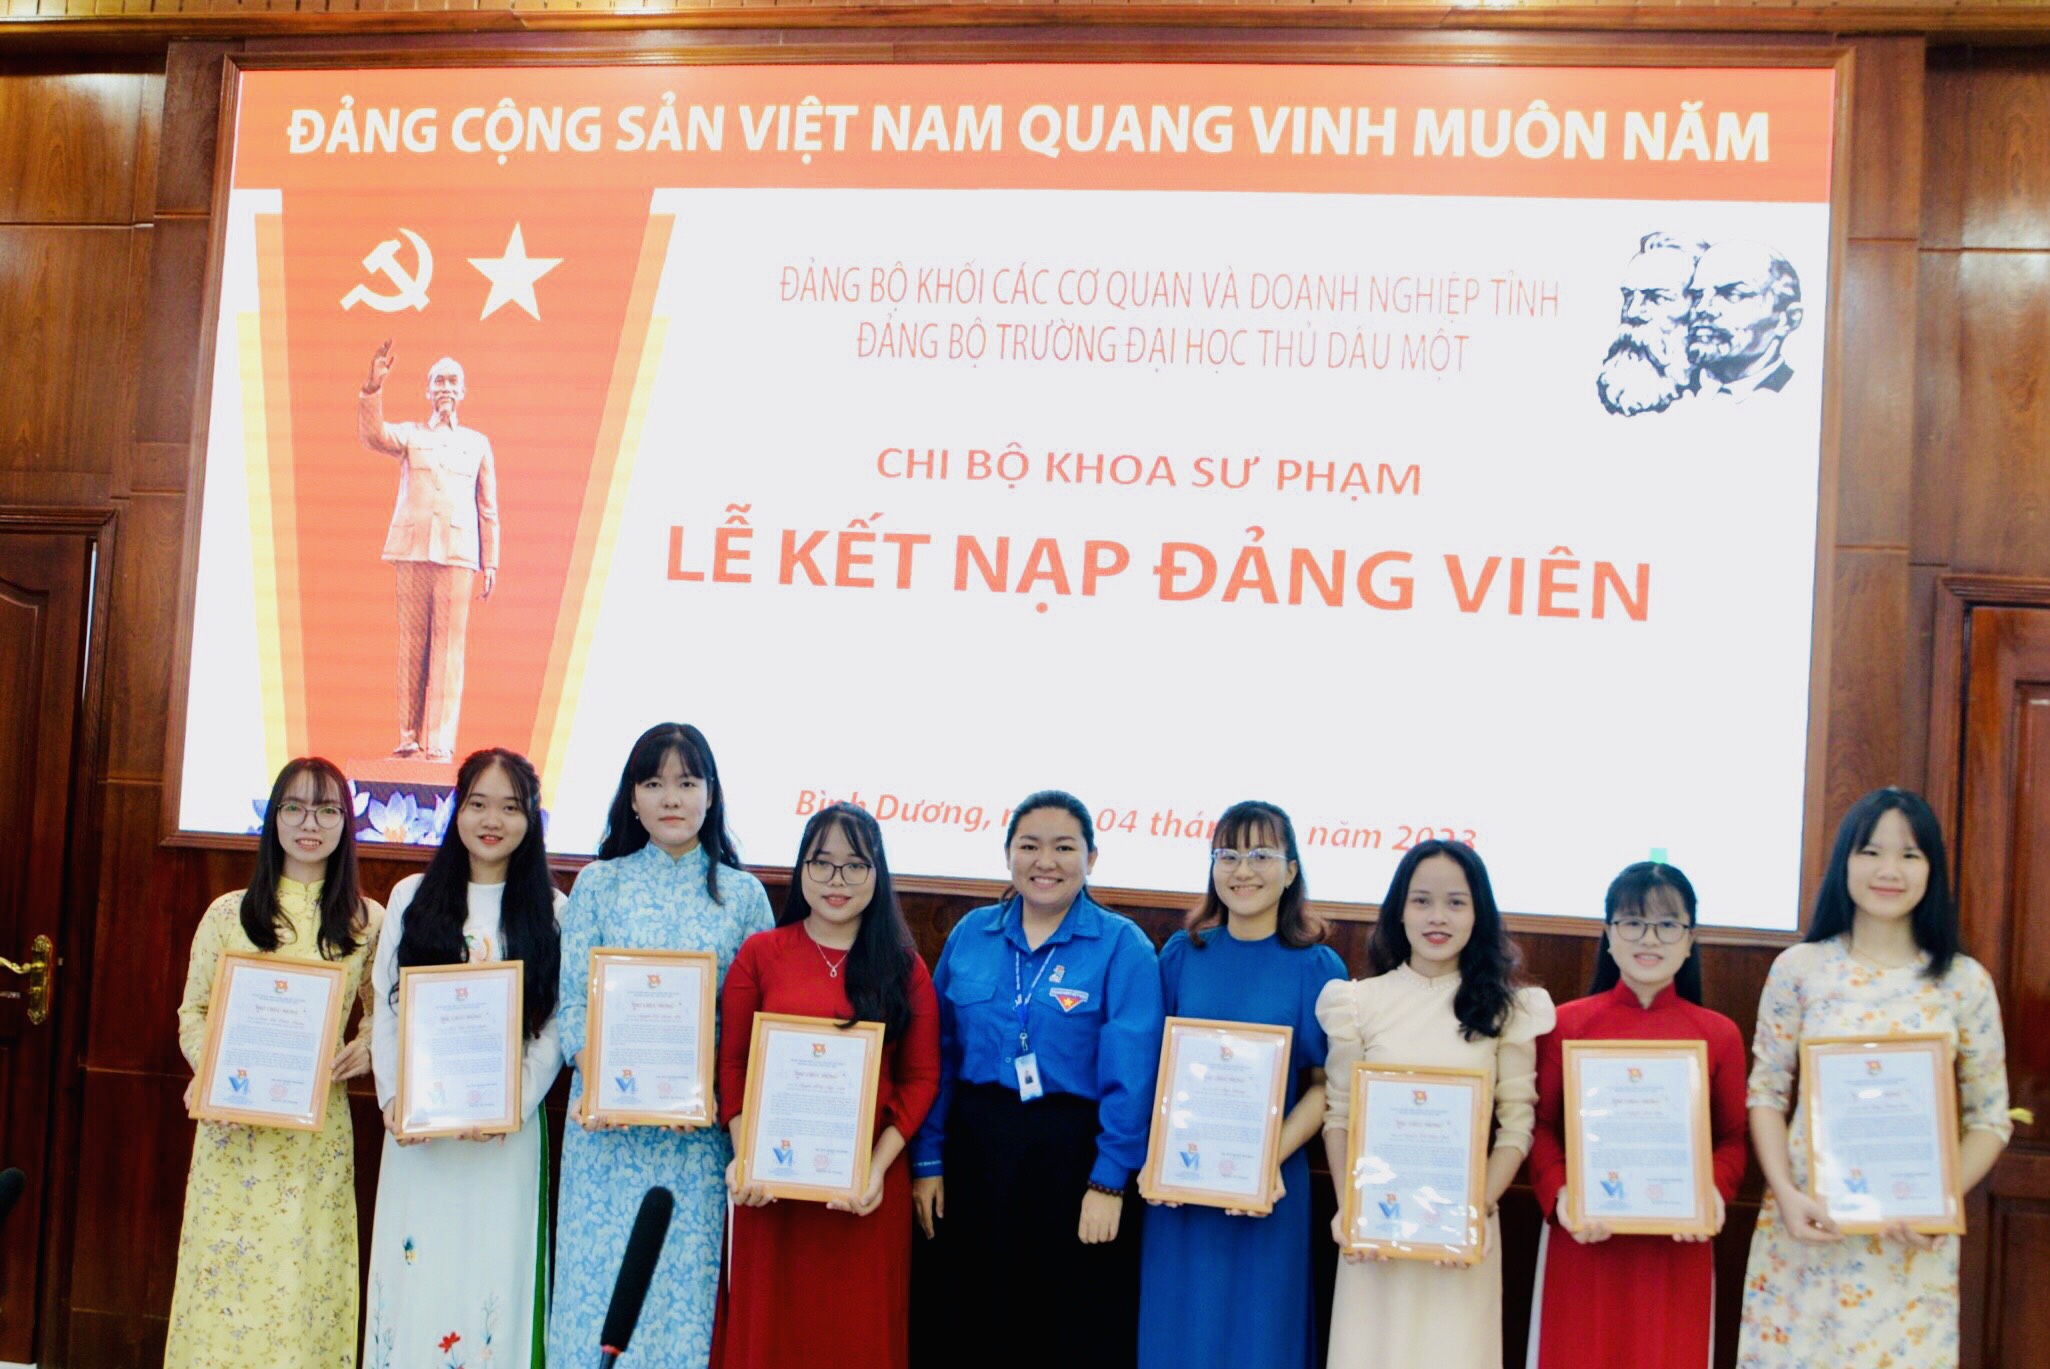 09 đoàn viên ưu tú của Đoàn trường Đại học Thủ Dầu Một được vinh dự đứng vào hàng ngũ của Đảng Cộng sản Việt Nam